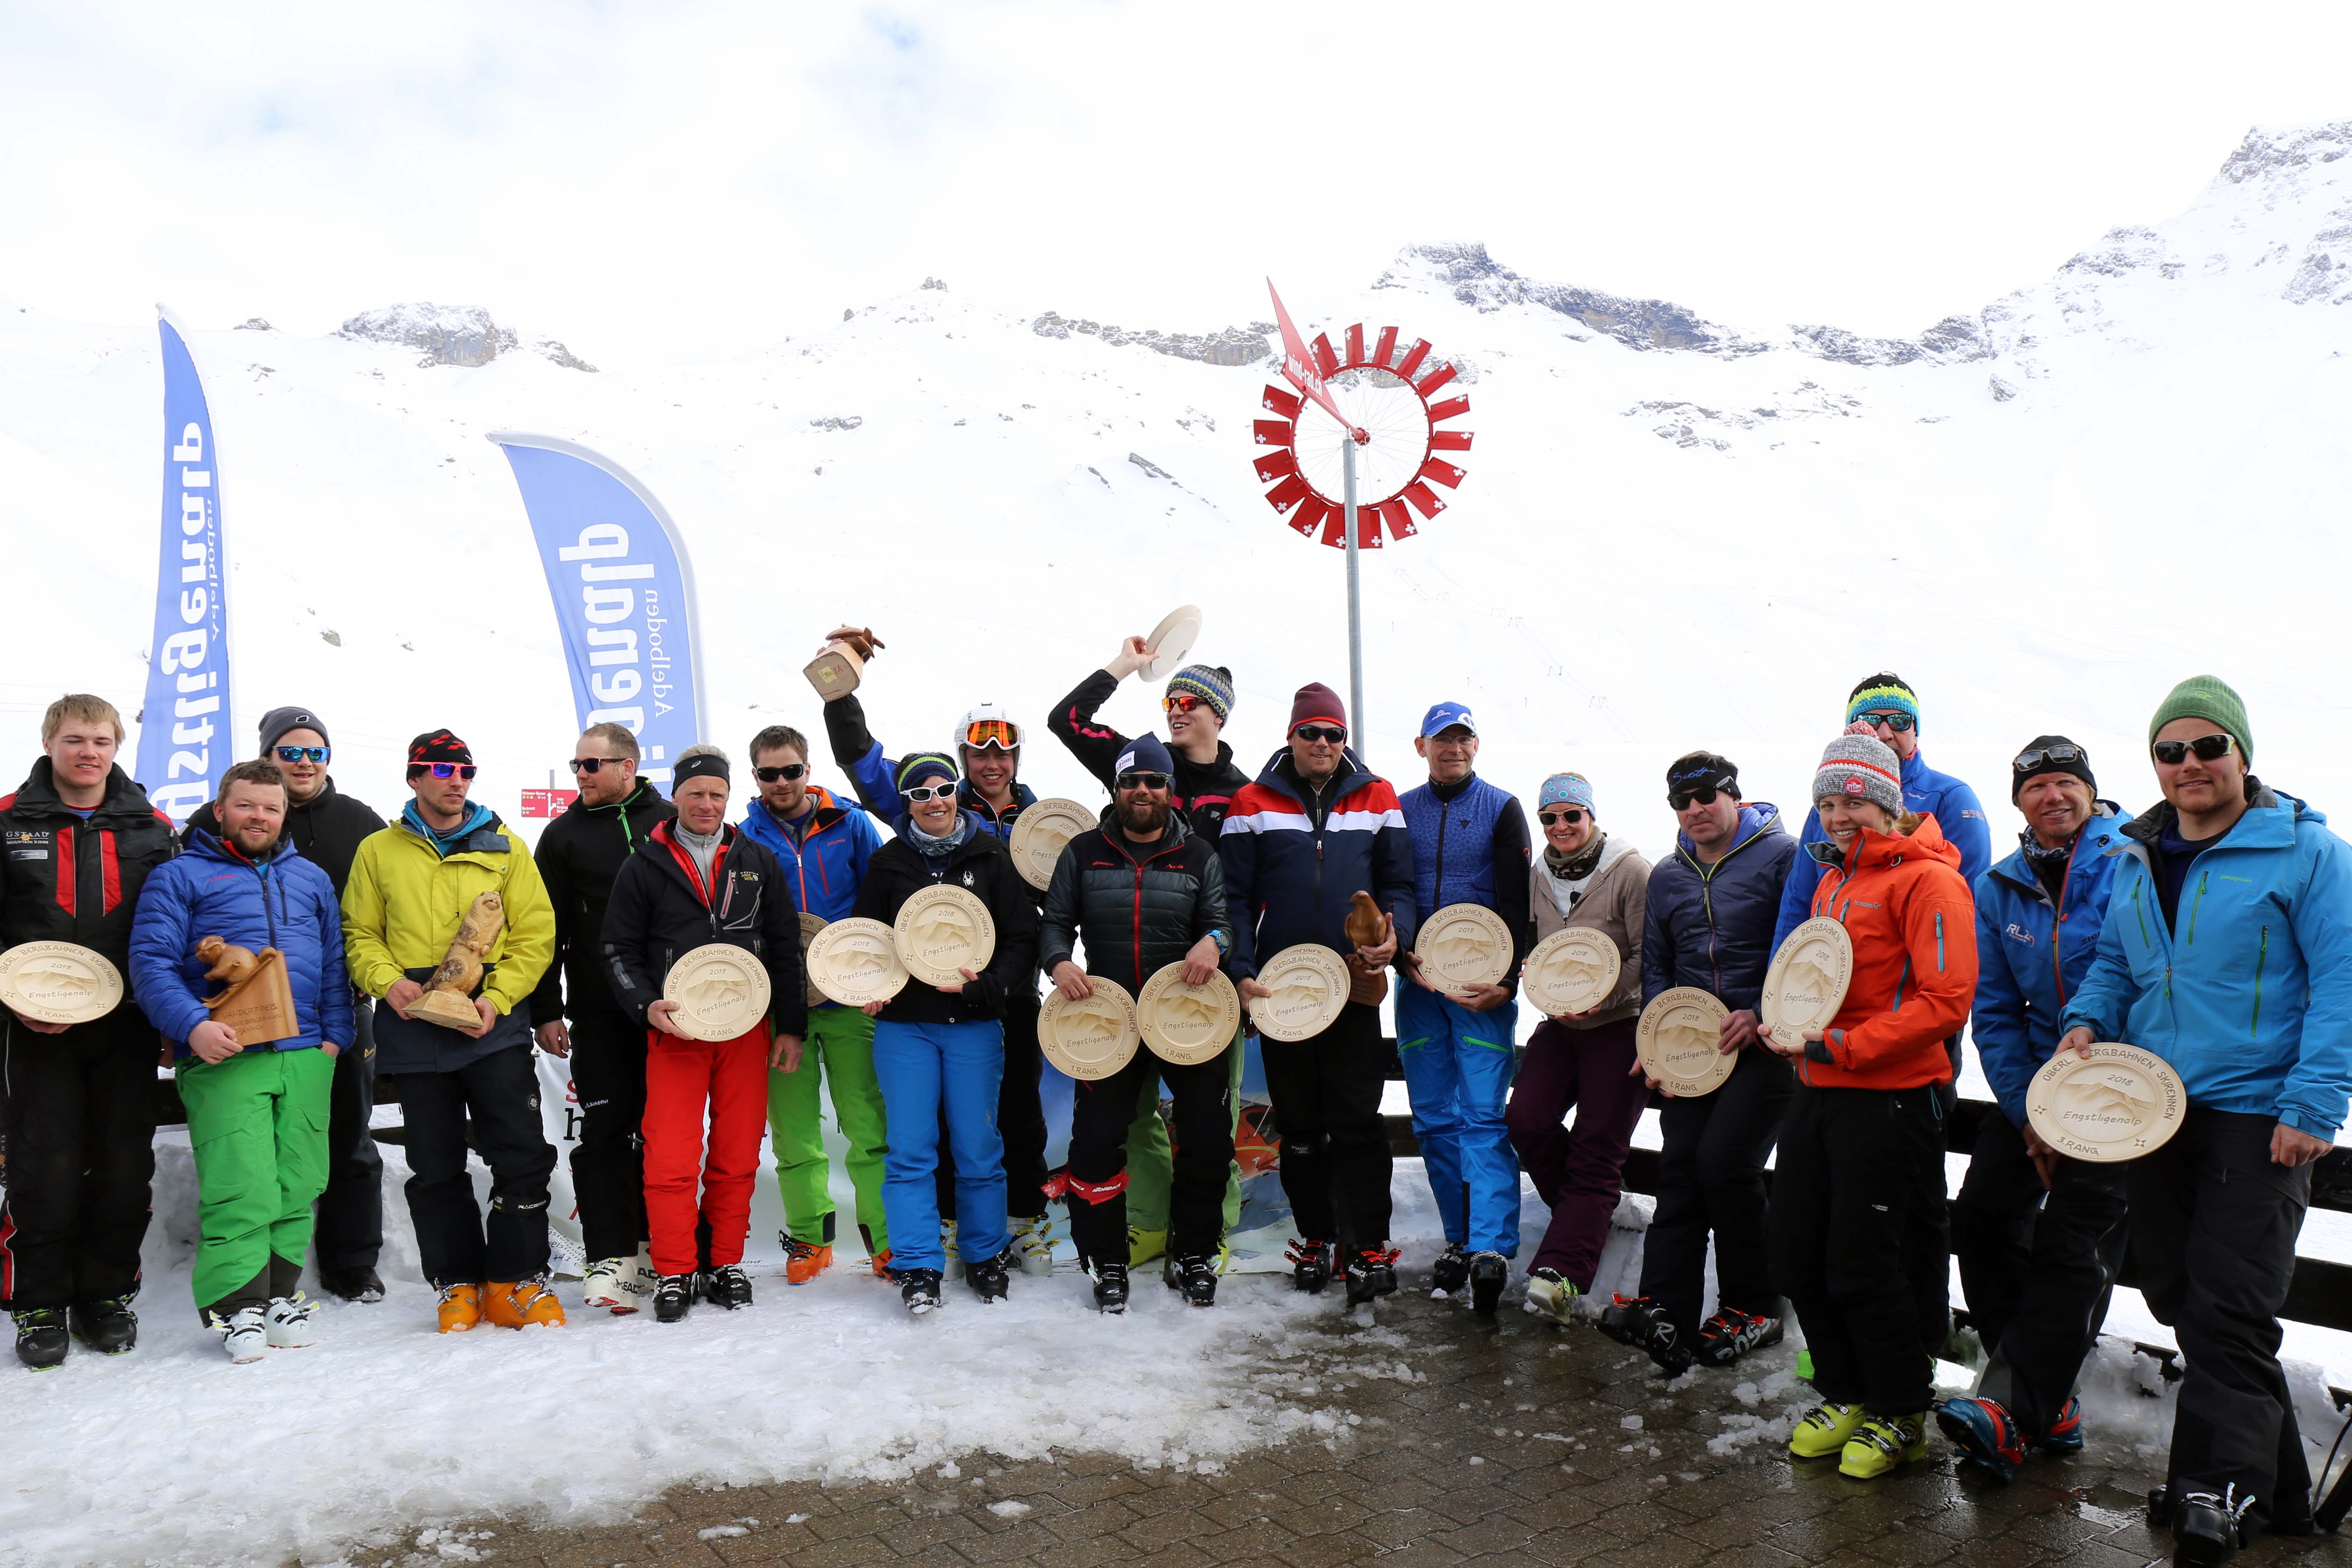 Berner oberländische Bergbahnen Skirennen mit Garaventa, Swiss Helicopter und Teufelberger.